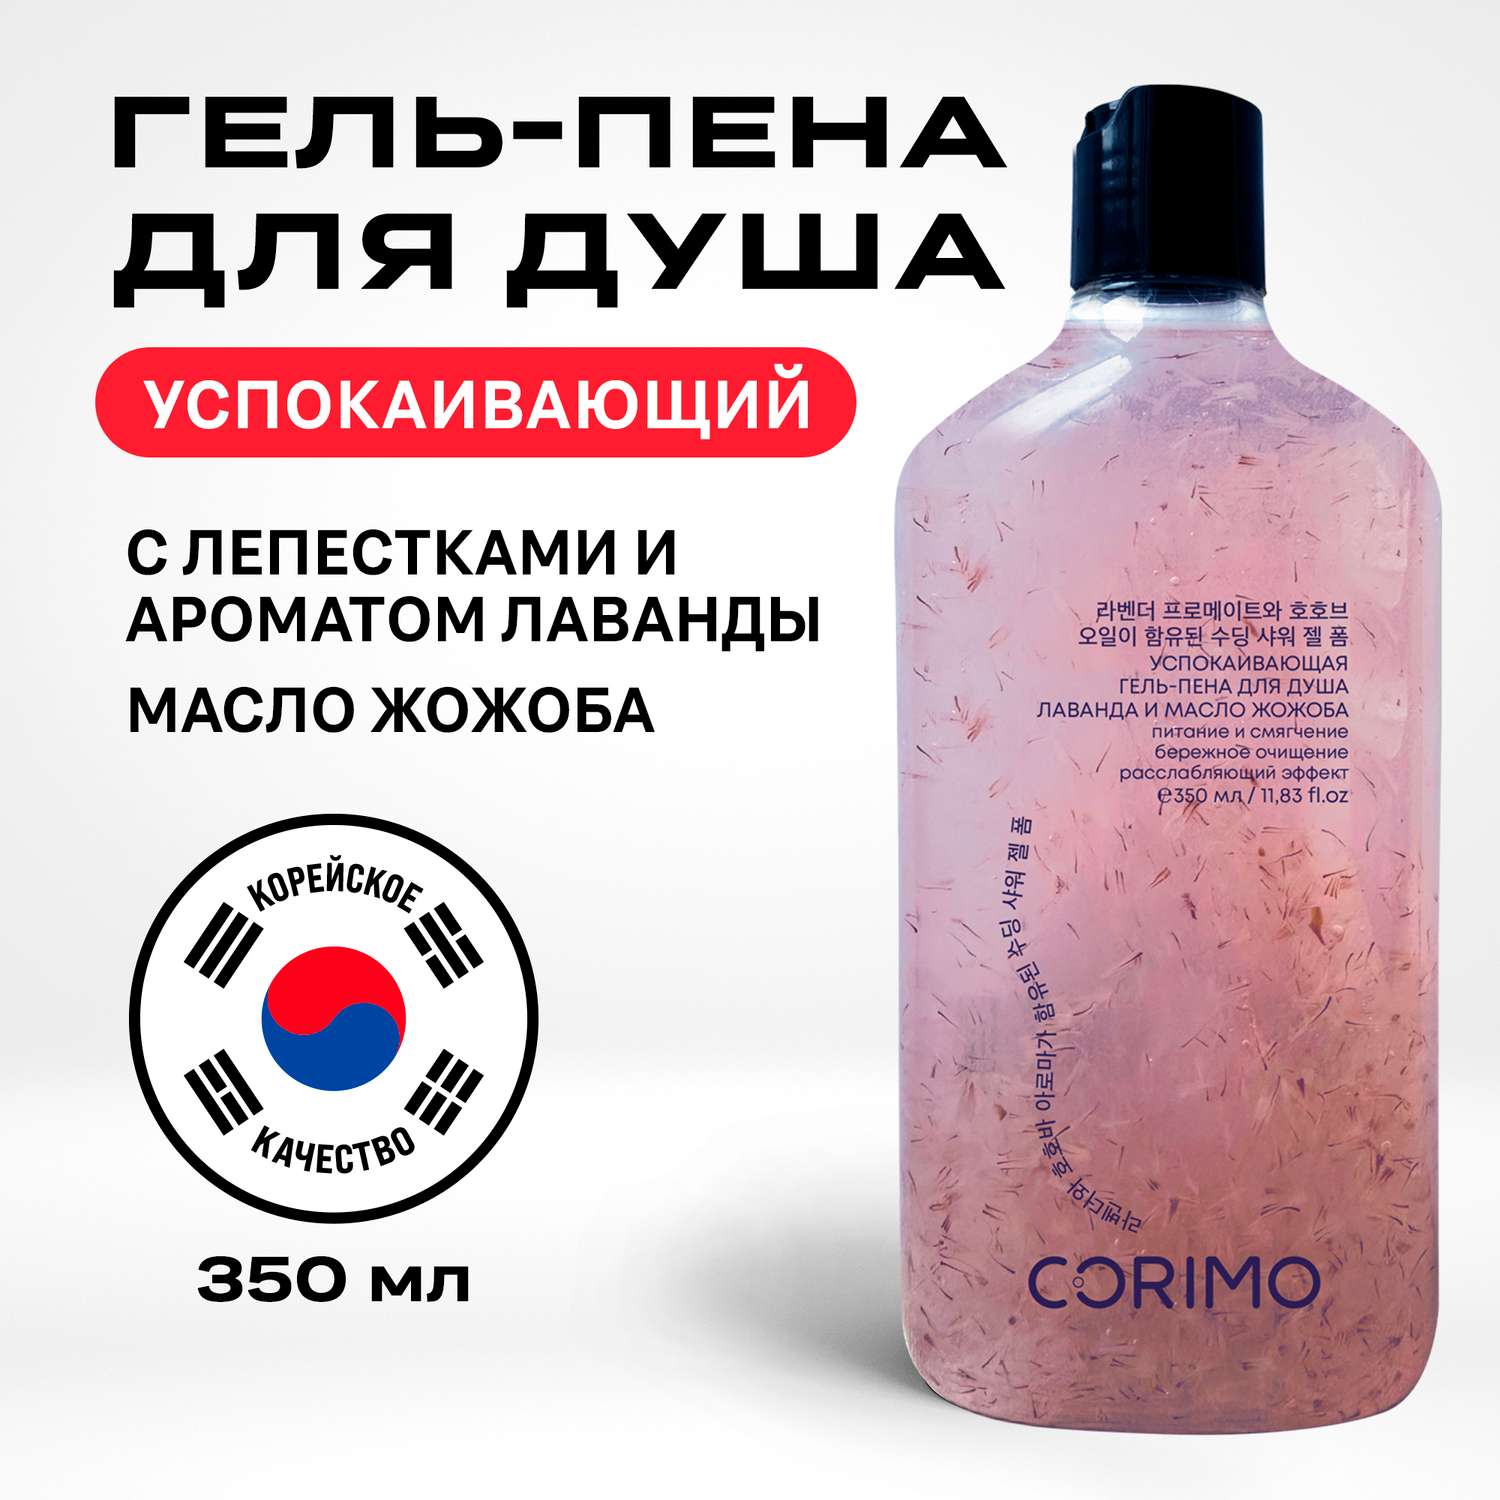 Гель-пена для душа CORIMO успокаивающая с ароматом лаванды и маслом жожоба 350 мл - фото 1